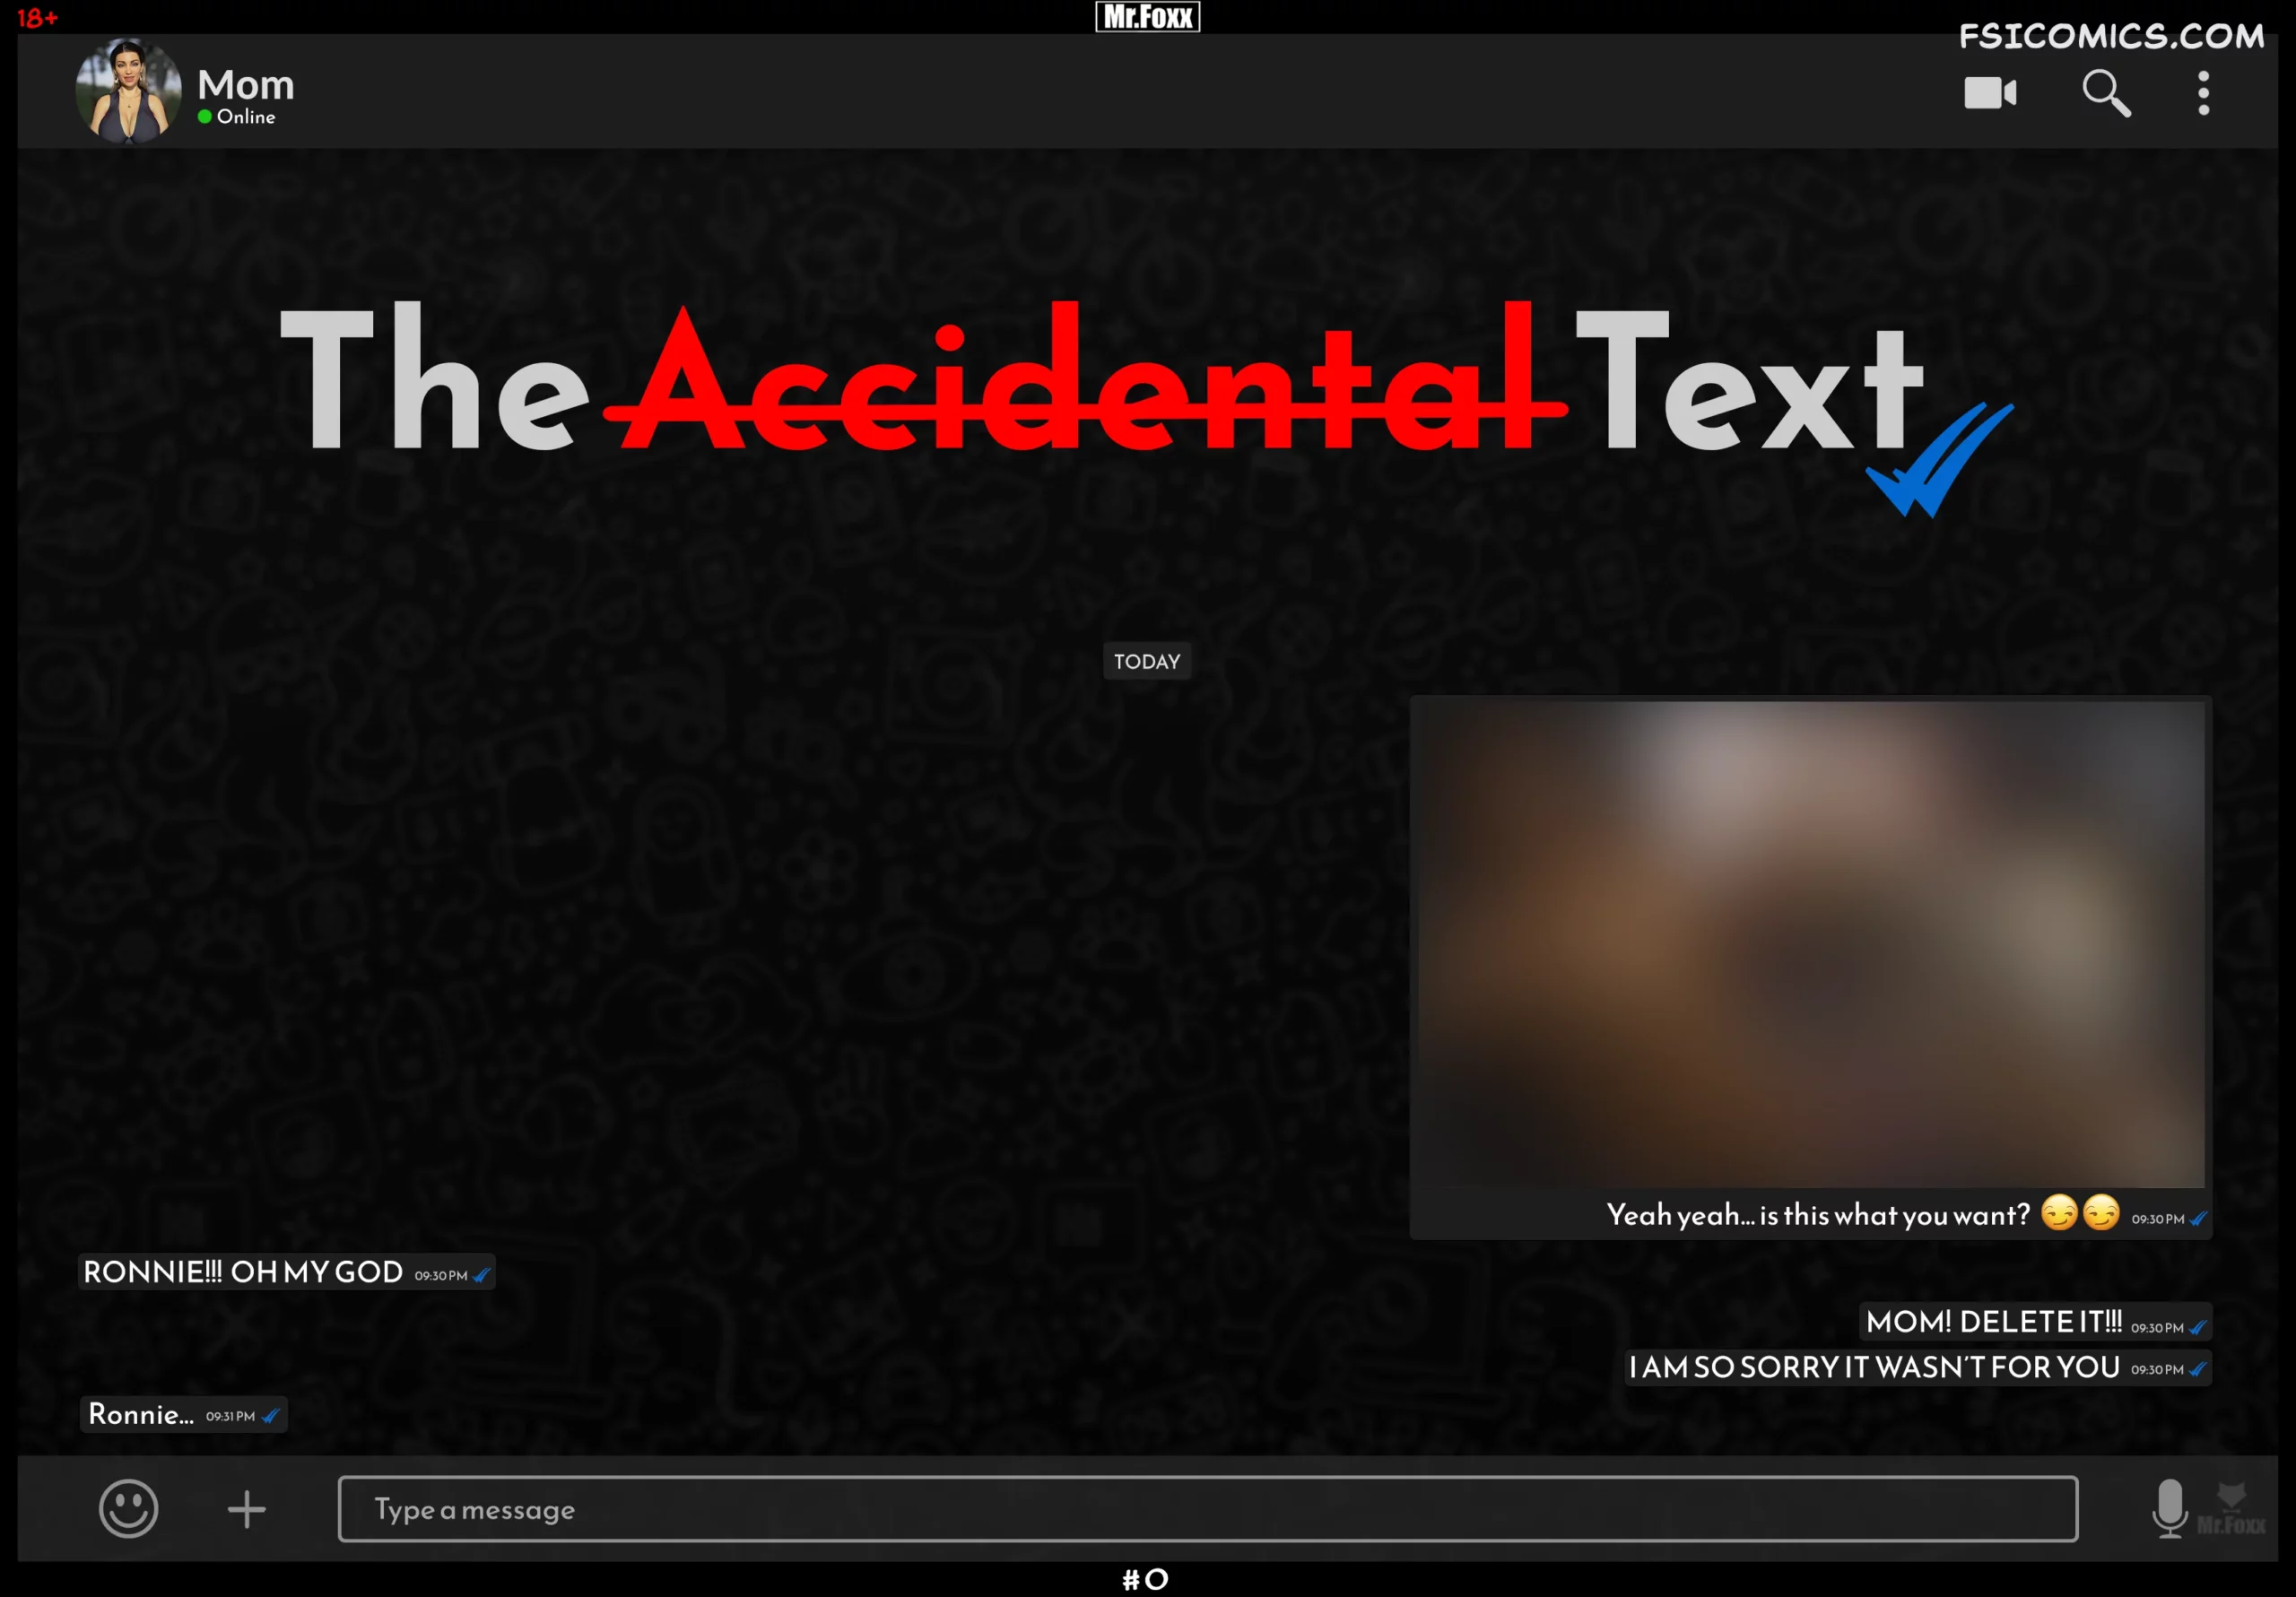 The Accidental Text - Mr.FOXX - 153 - FSIComics